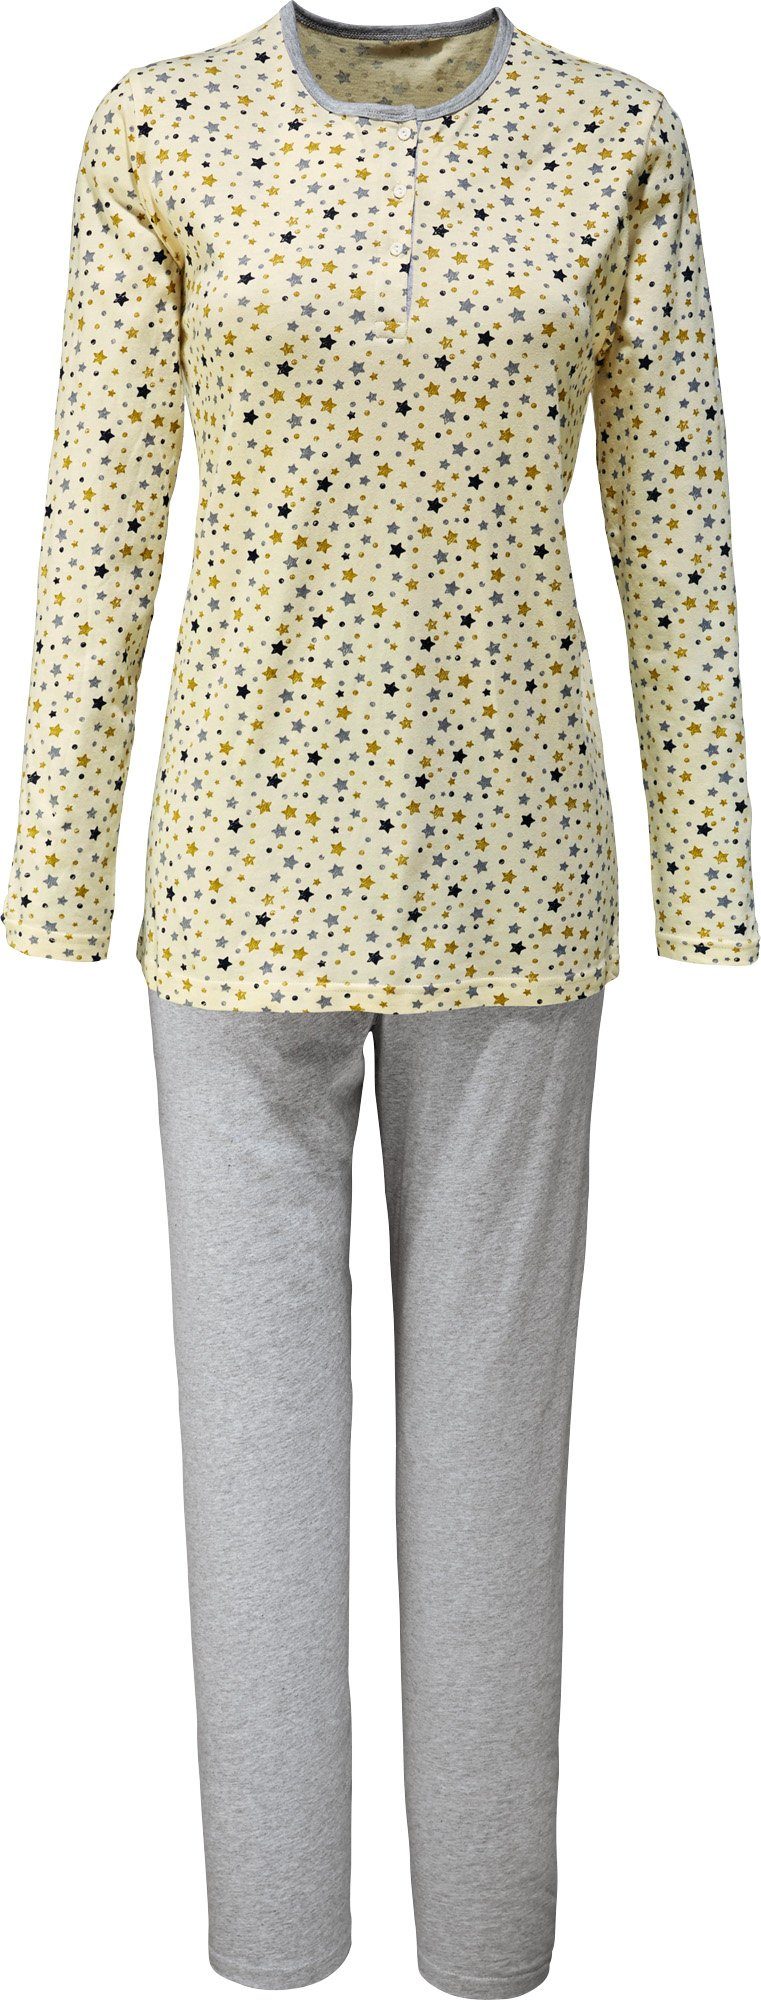 Single-Jersey Müller Damen-Schlafanzug gemustert Pyjama Erwin